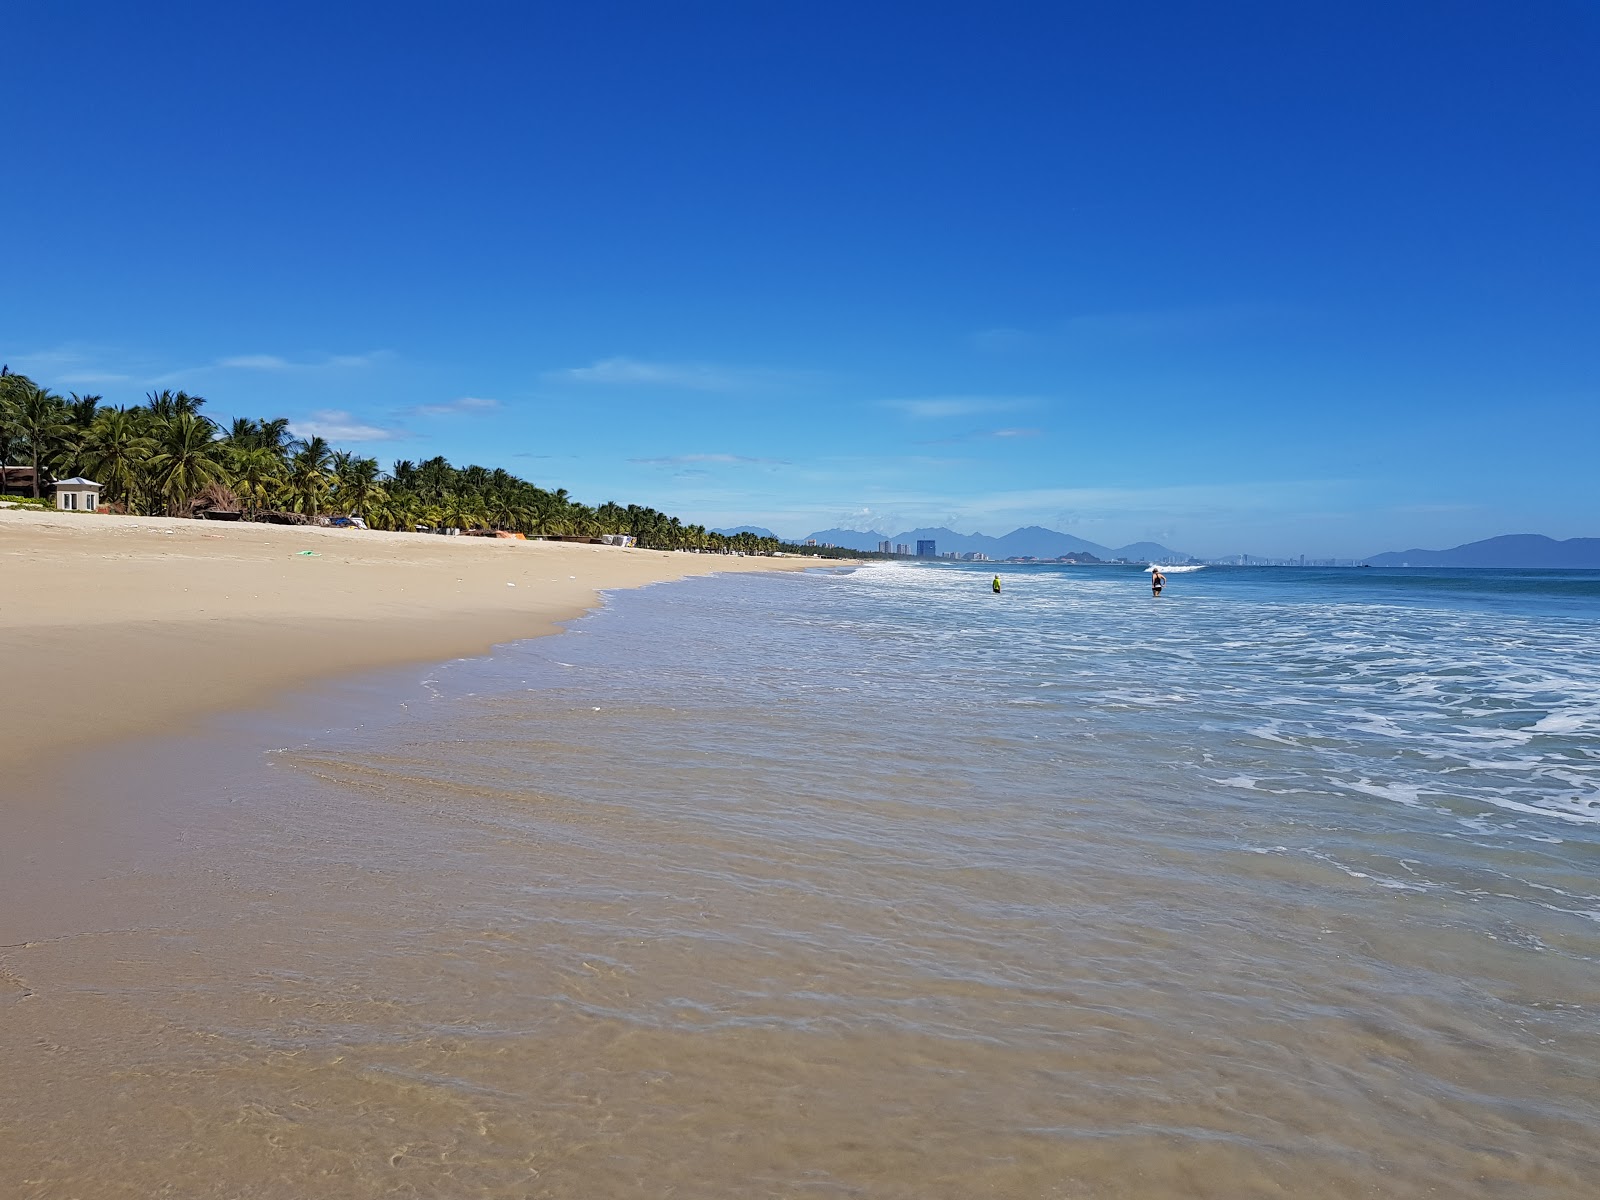 Zdjęcie Ha My Beach z powierzchnią jasny, drobny piasek